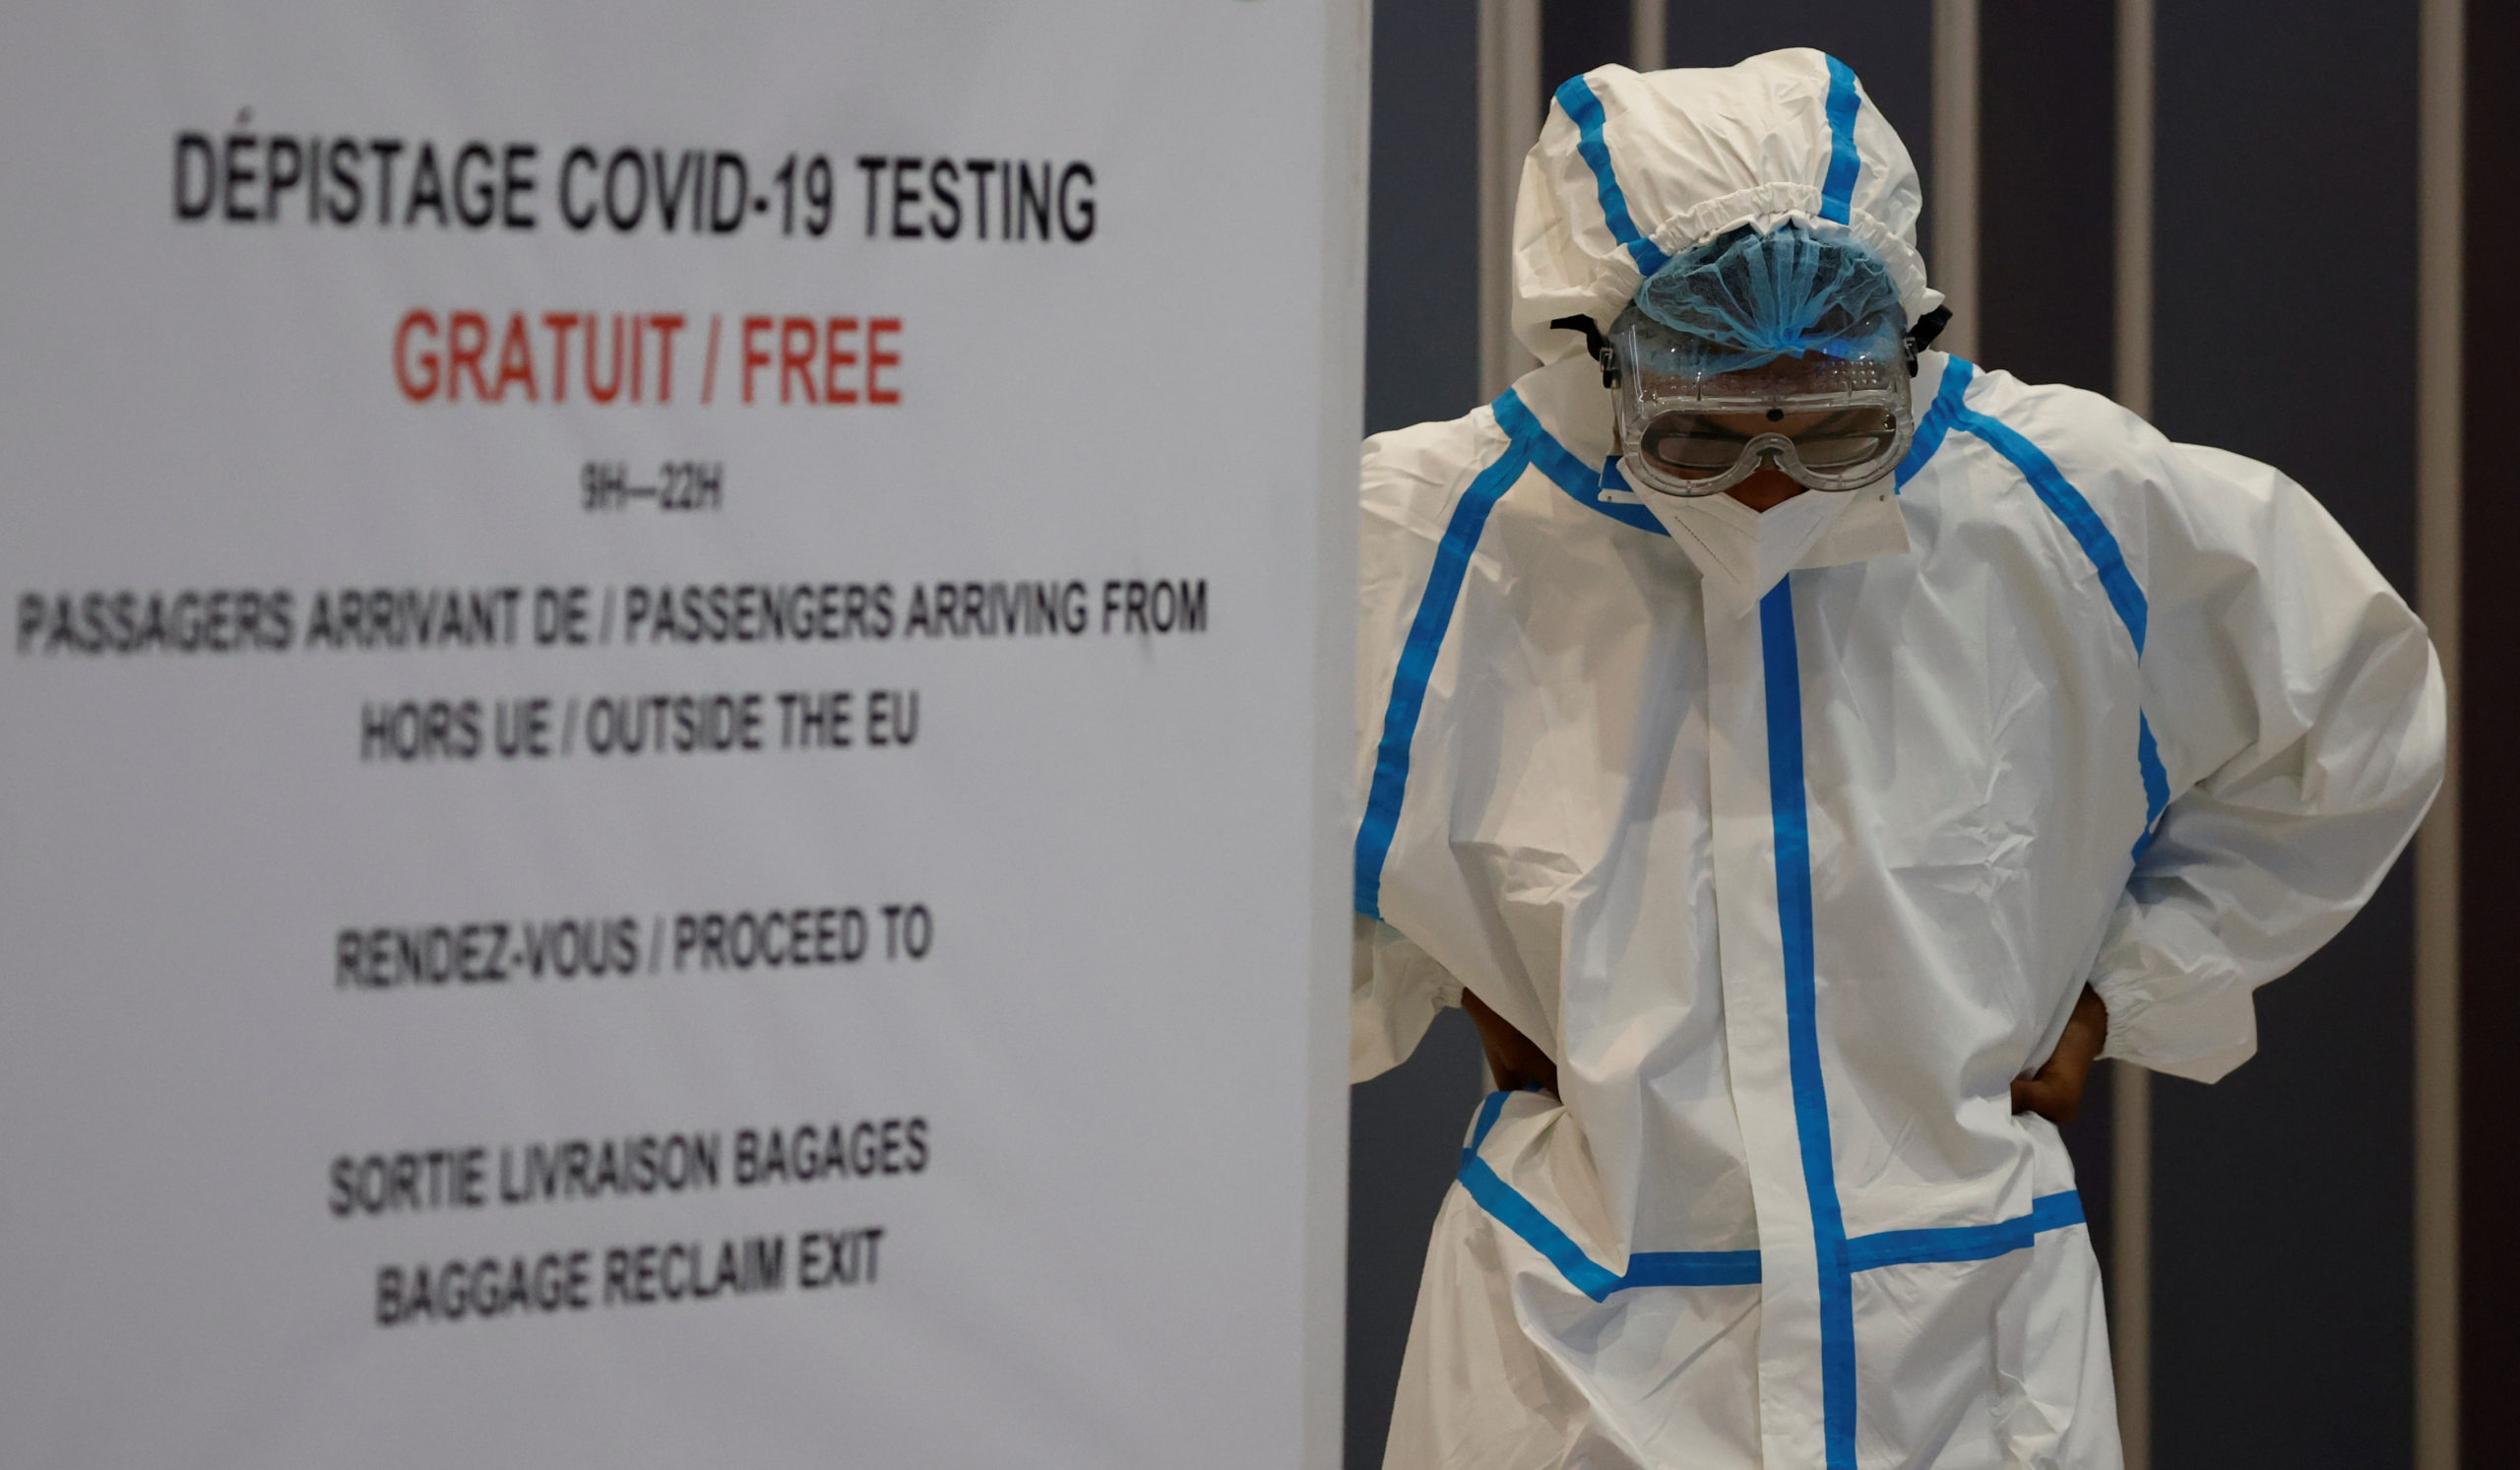 La France a enregistré 1.346 nouveaux cas de contamination au coronavirus